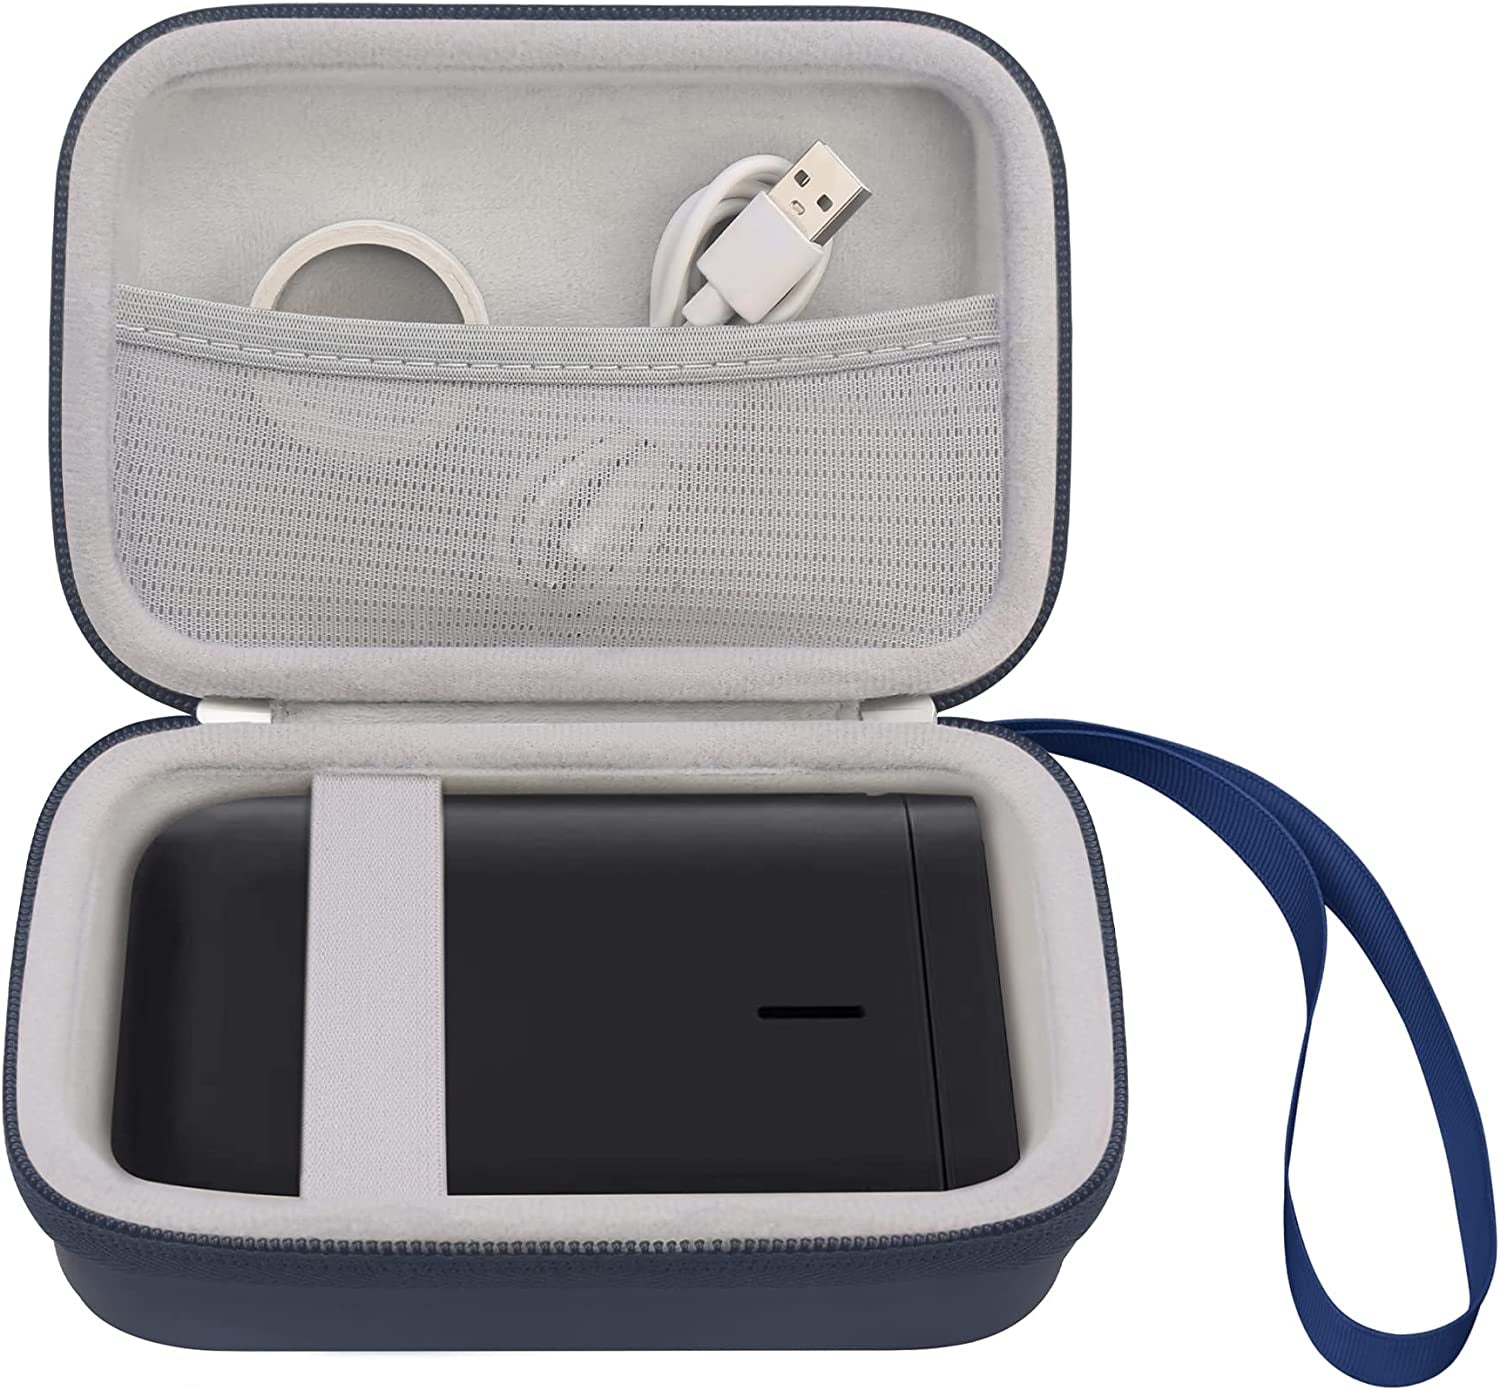 Carrying Case for NIIMBOT D11 Label Maker, D11 Portable Bluetooth Handheld Label Printer Storage Holder, Extra Mesh Pocket Fits NIIMBOT D11 Label Maker Tape, Cable, Blue (CASE ONLY)